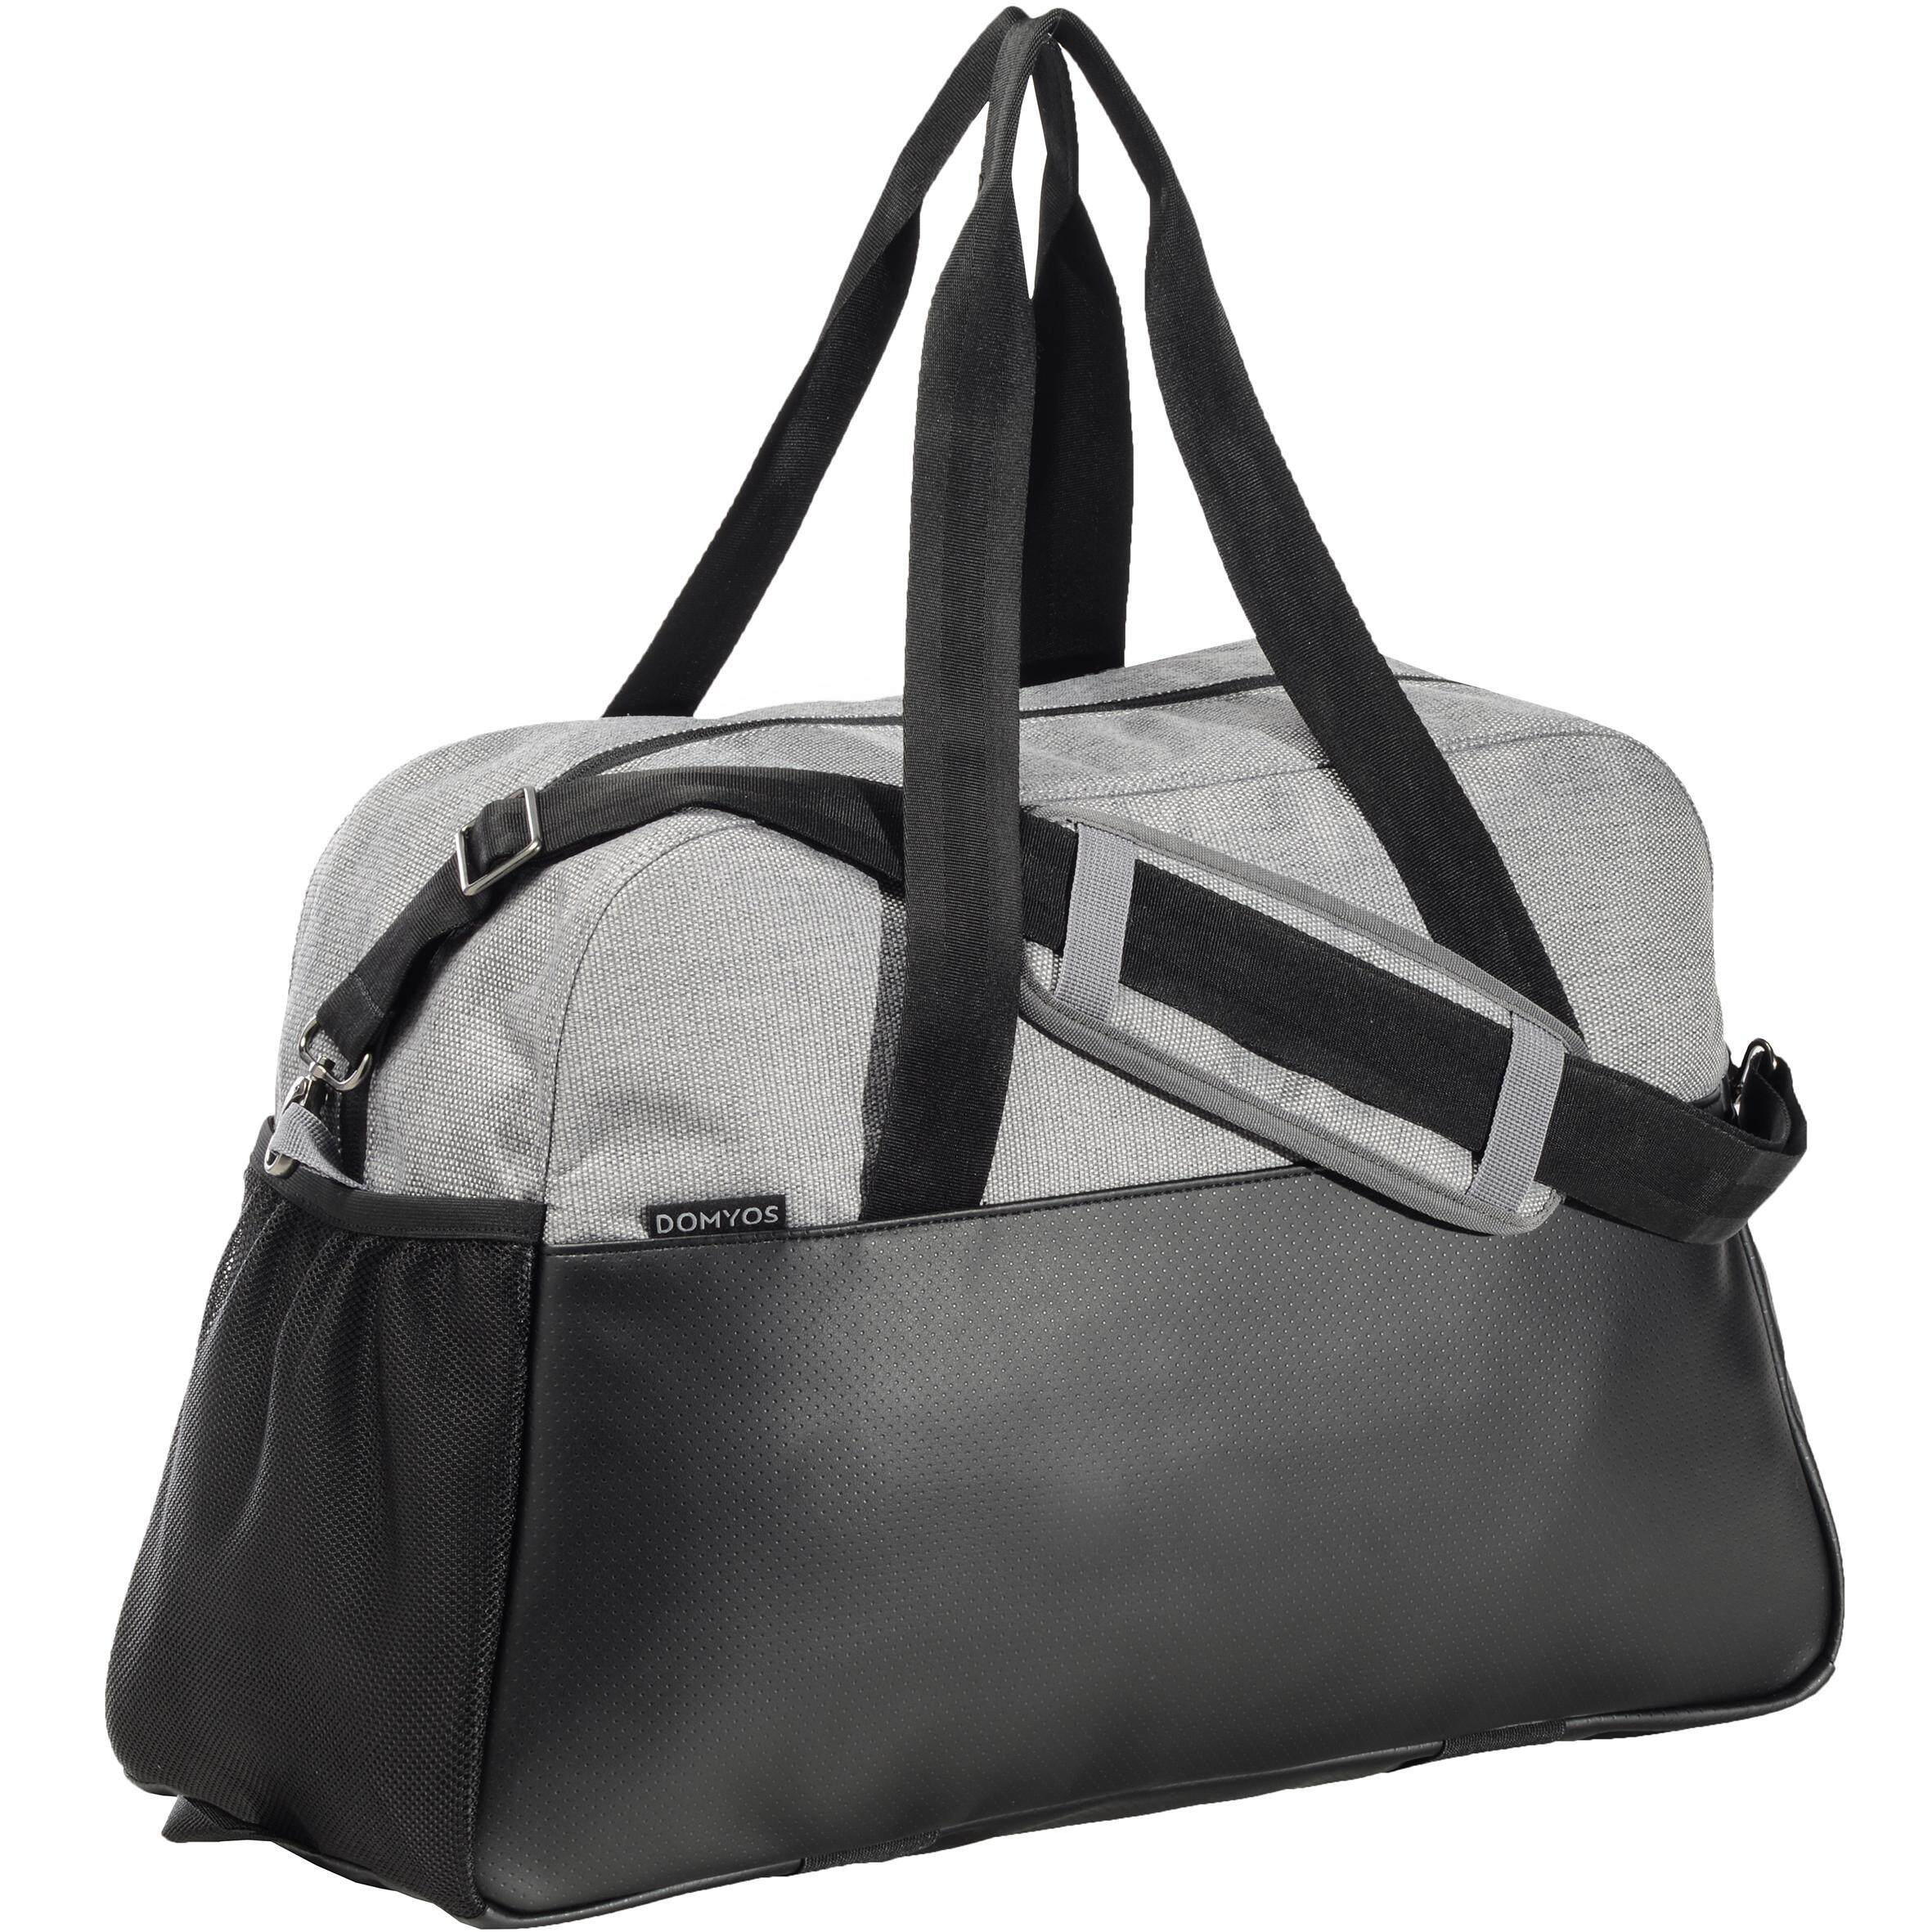 [ด่วน!! โปรโมชั่นมีจำนวนจำกัด] กระเป๋าสำหรับการออกกำลังแบบคาร์ดิโอขนาด 30 ลิตร (สีเทา/ดำ) สำหรับ โยคะ ฟิตเนสคาดิโอเทรนนิ่ง